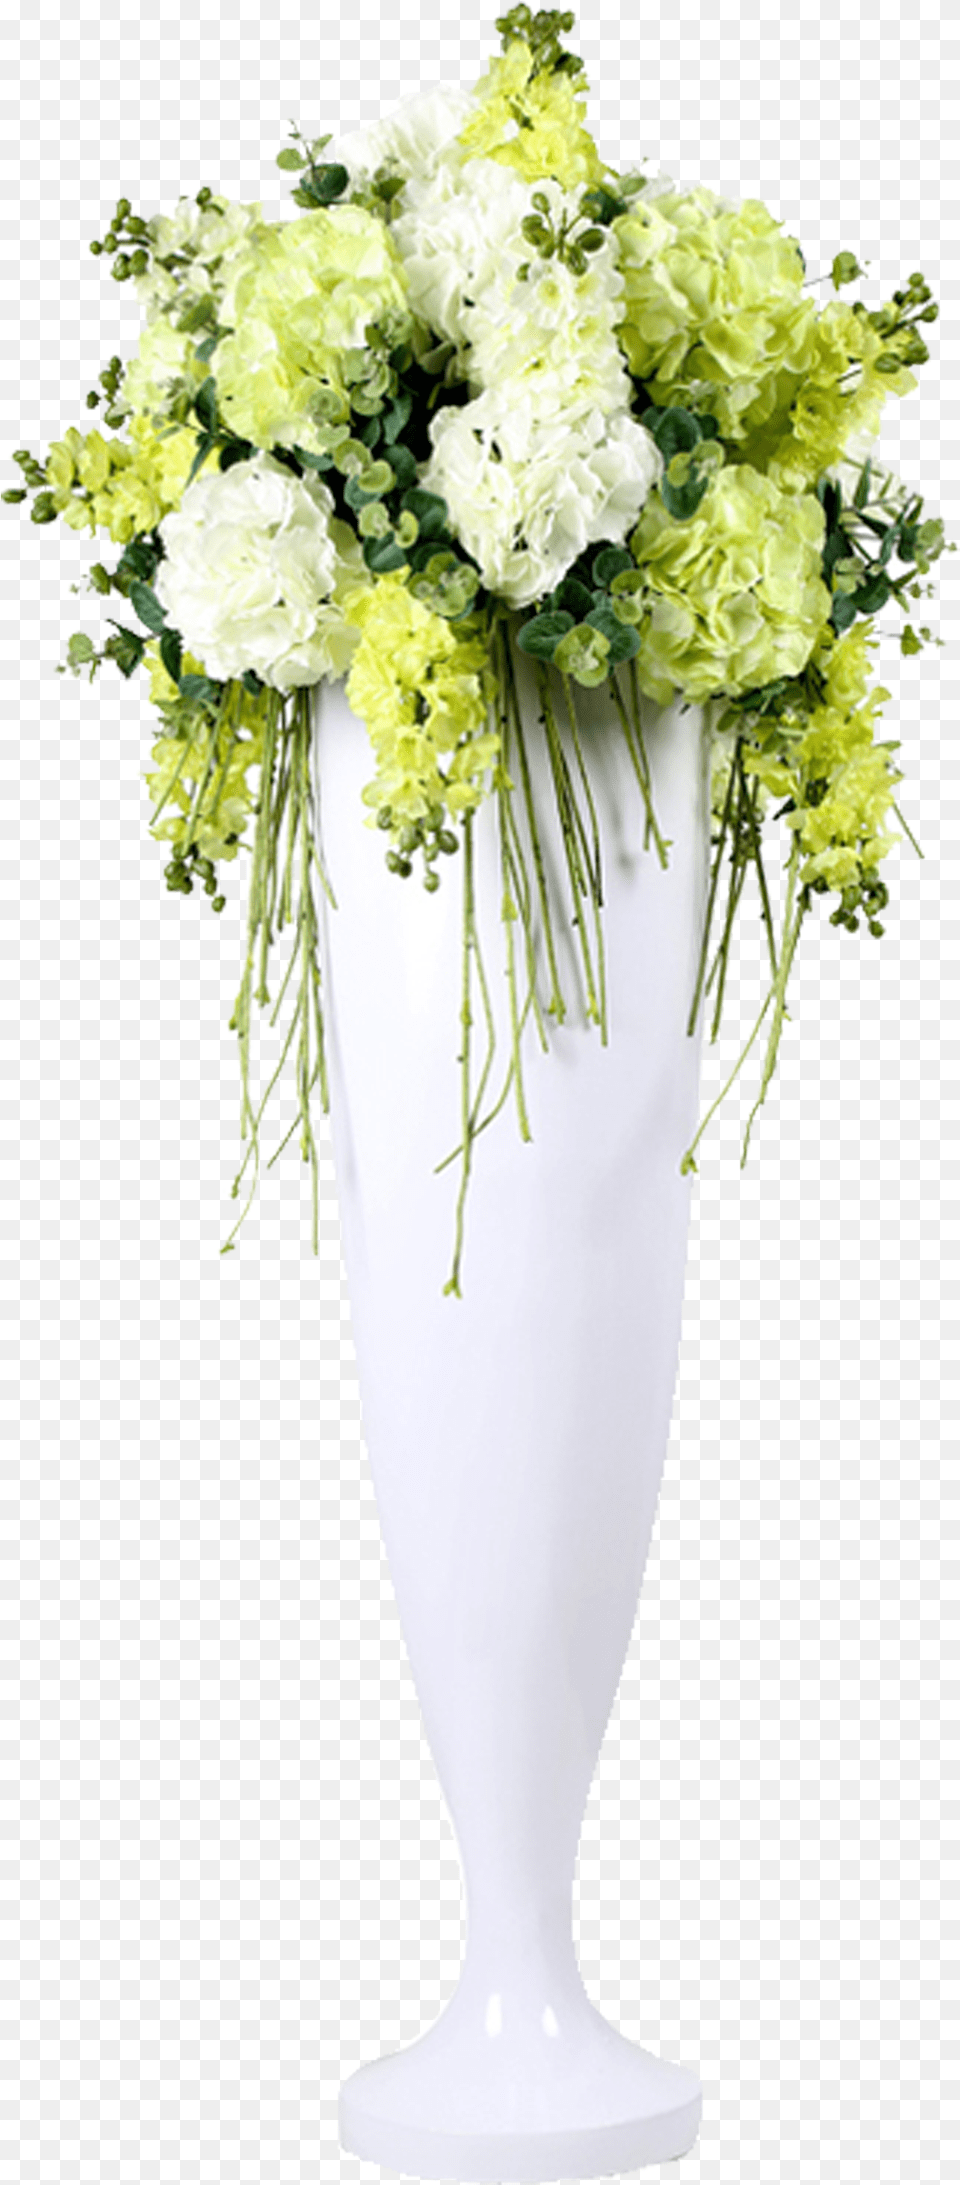 Transparent Flower Bouquet Clipart Flower In Vase, Art, Floral Design, Flower Arrangement, Flower Bouquet Free Png